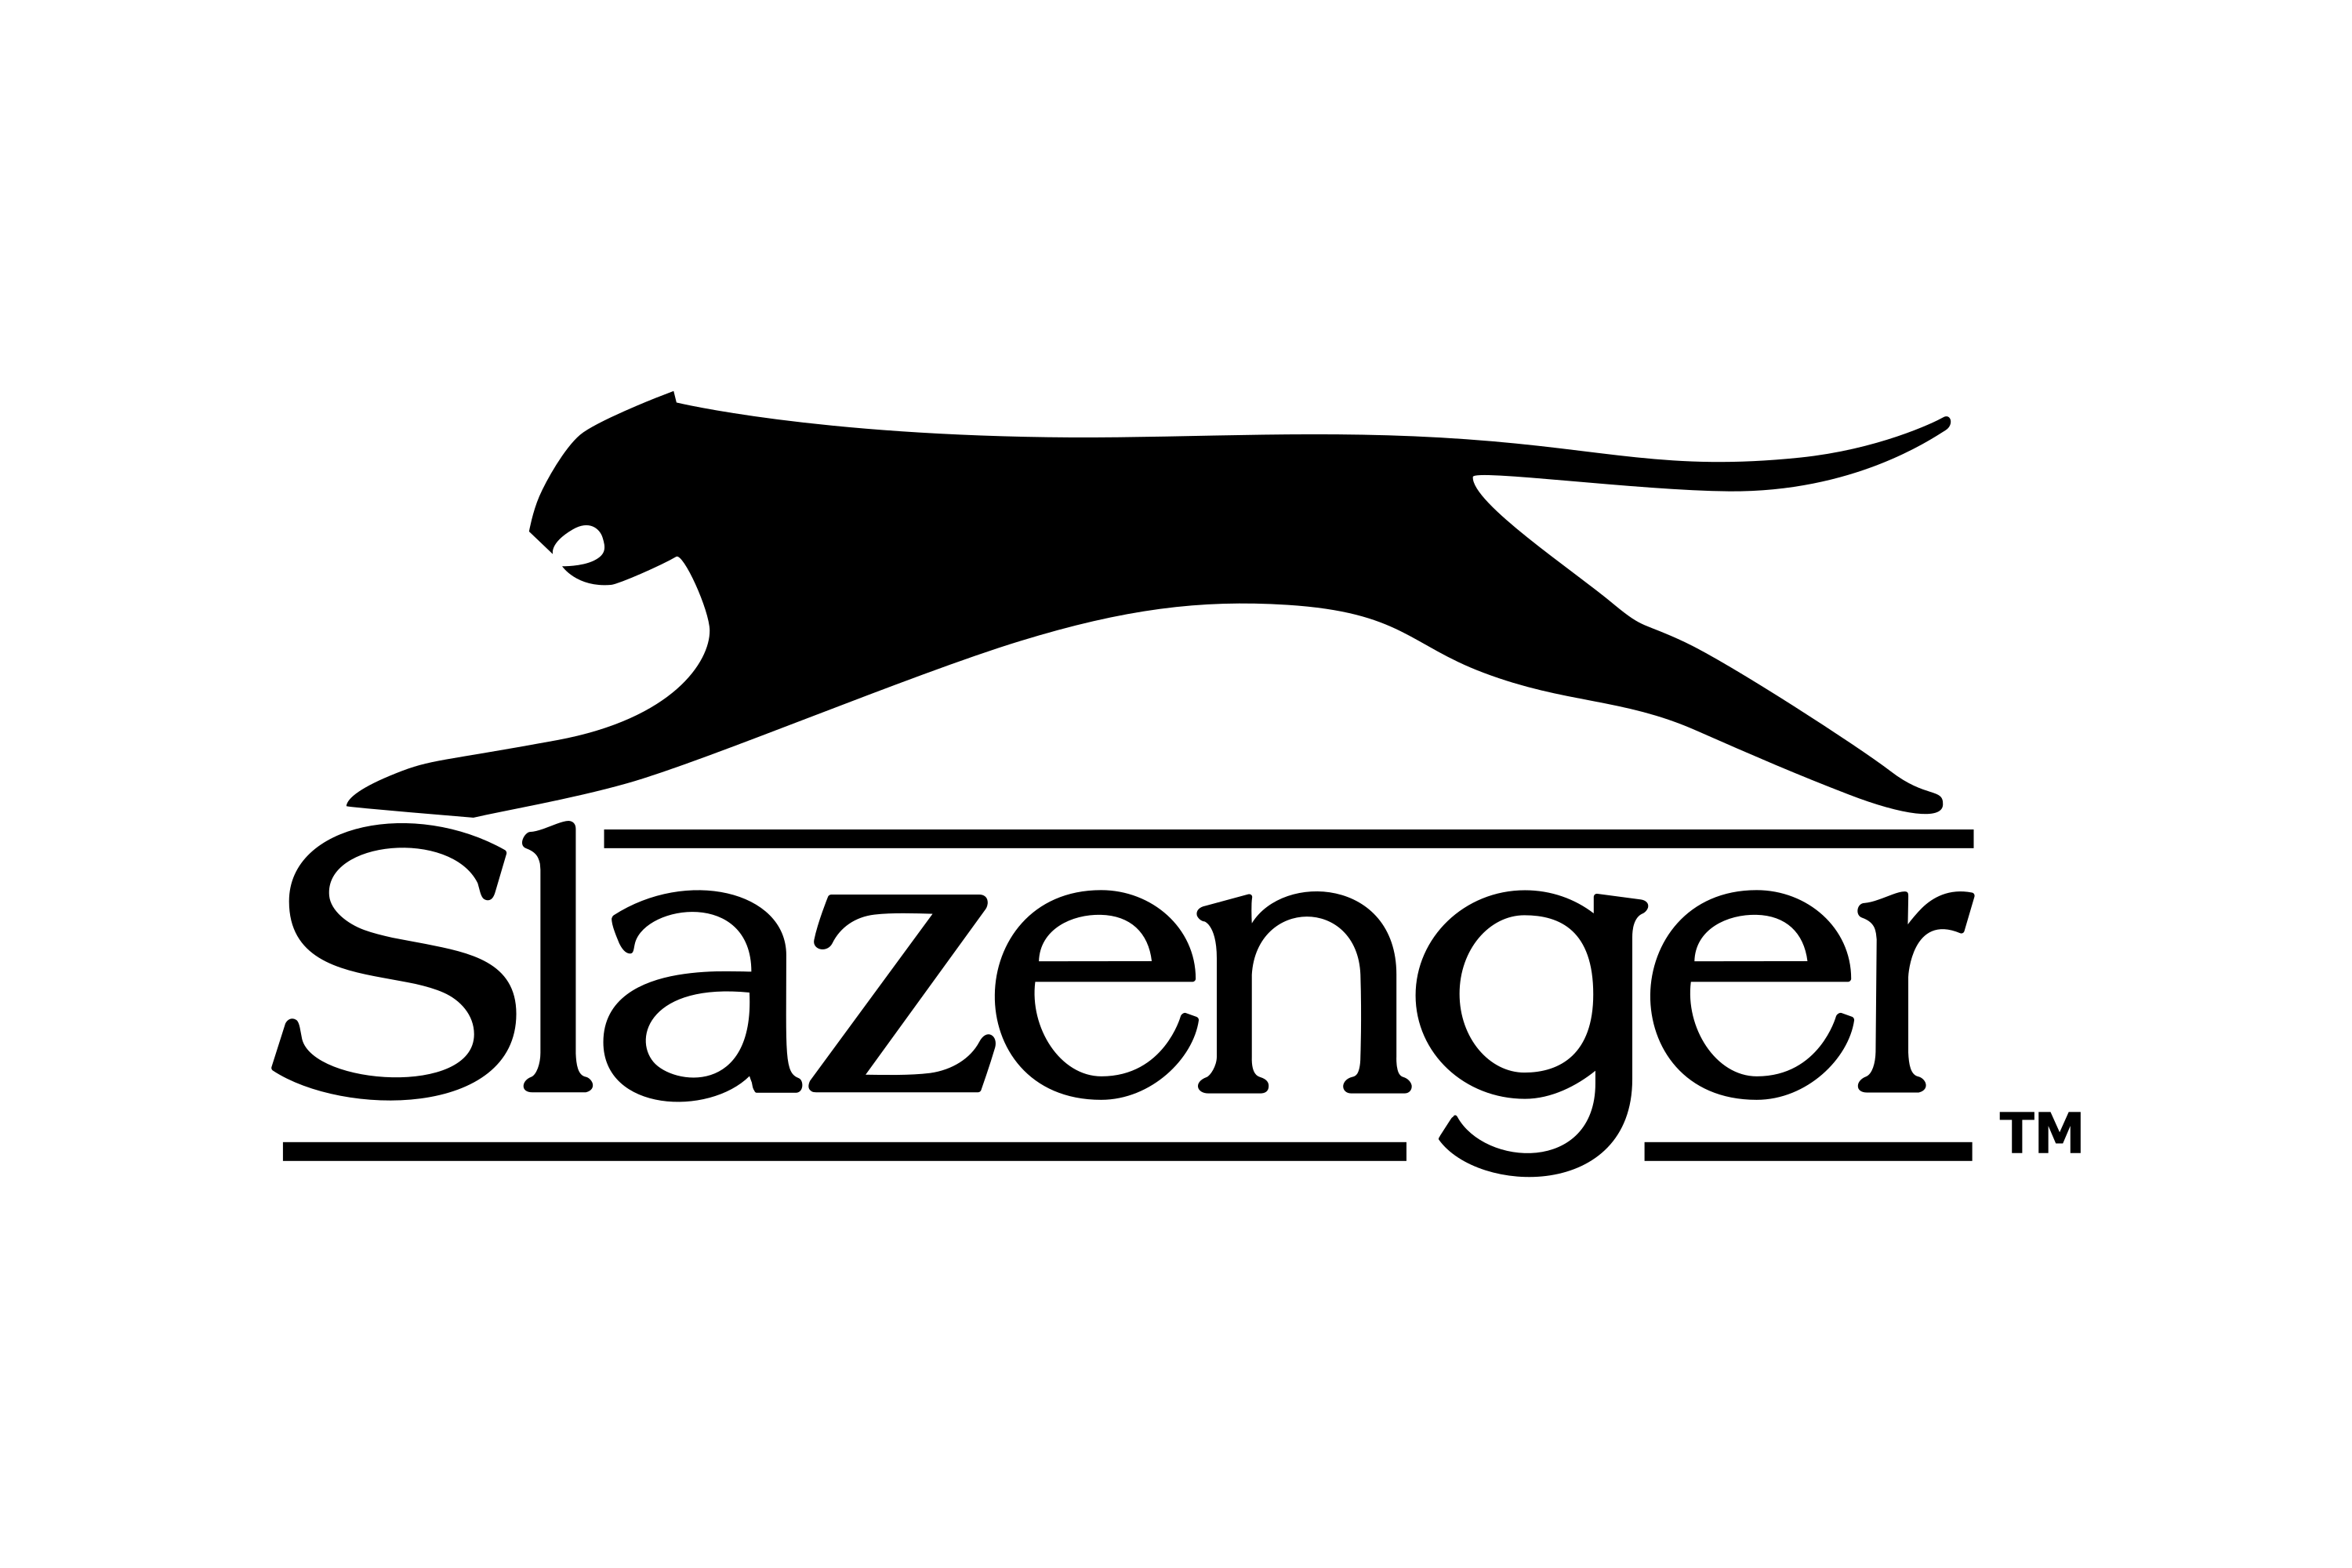 Slazenger Logo